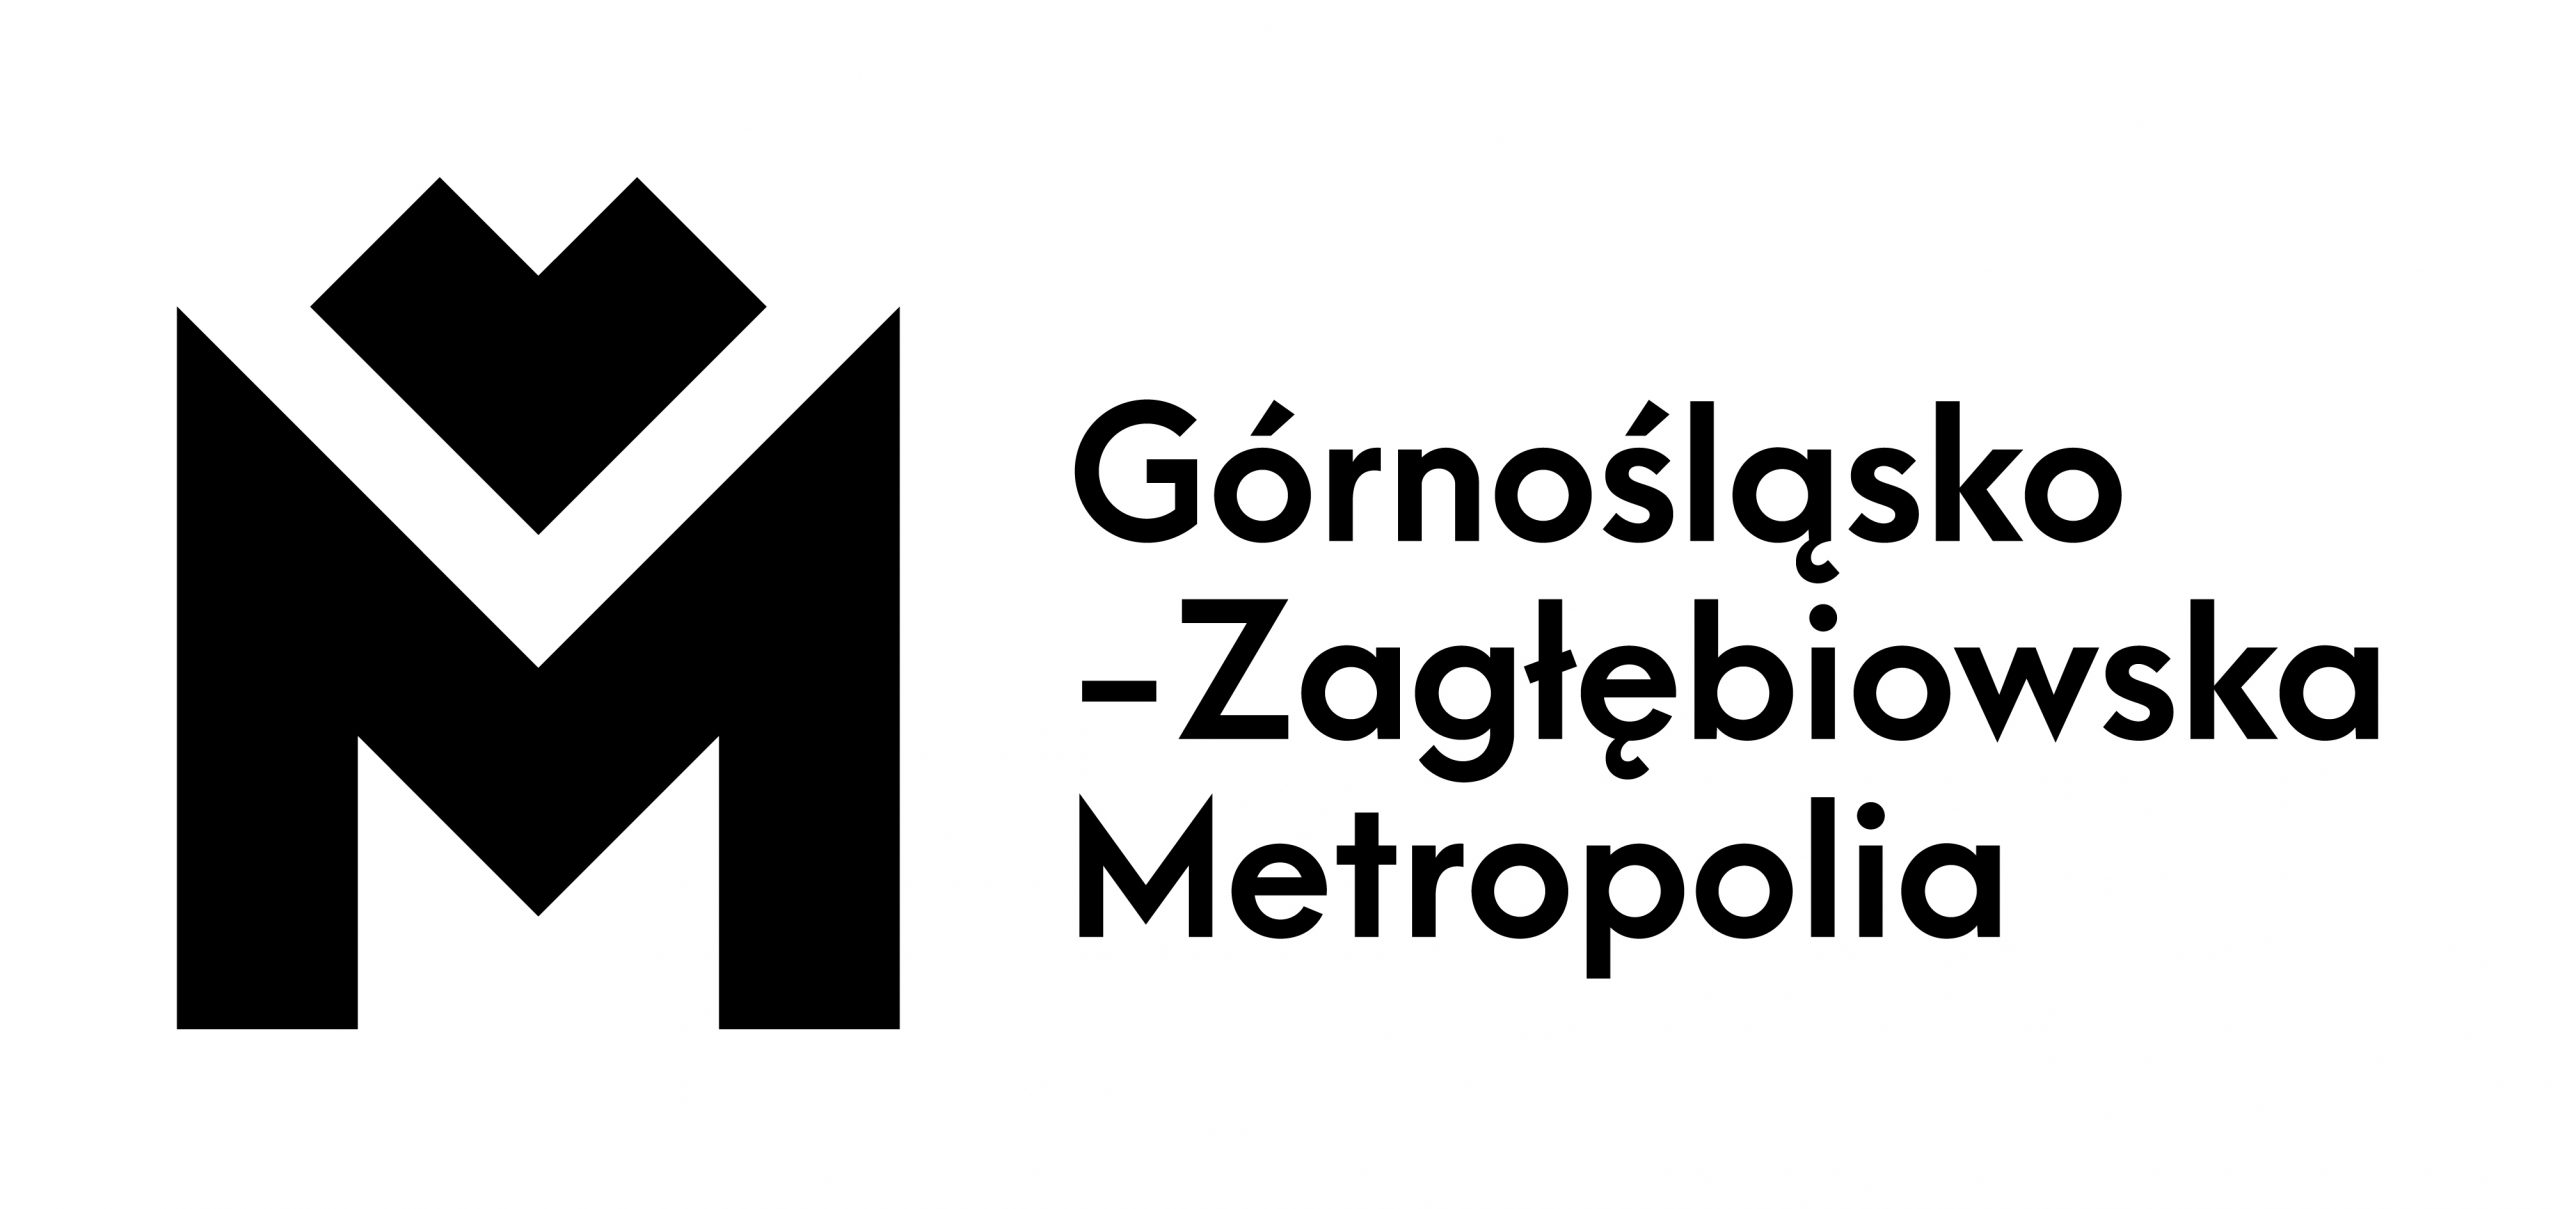 Metropolia GZM